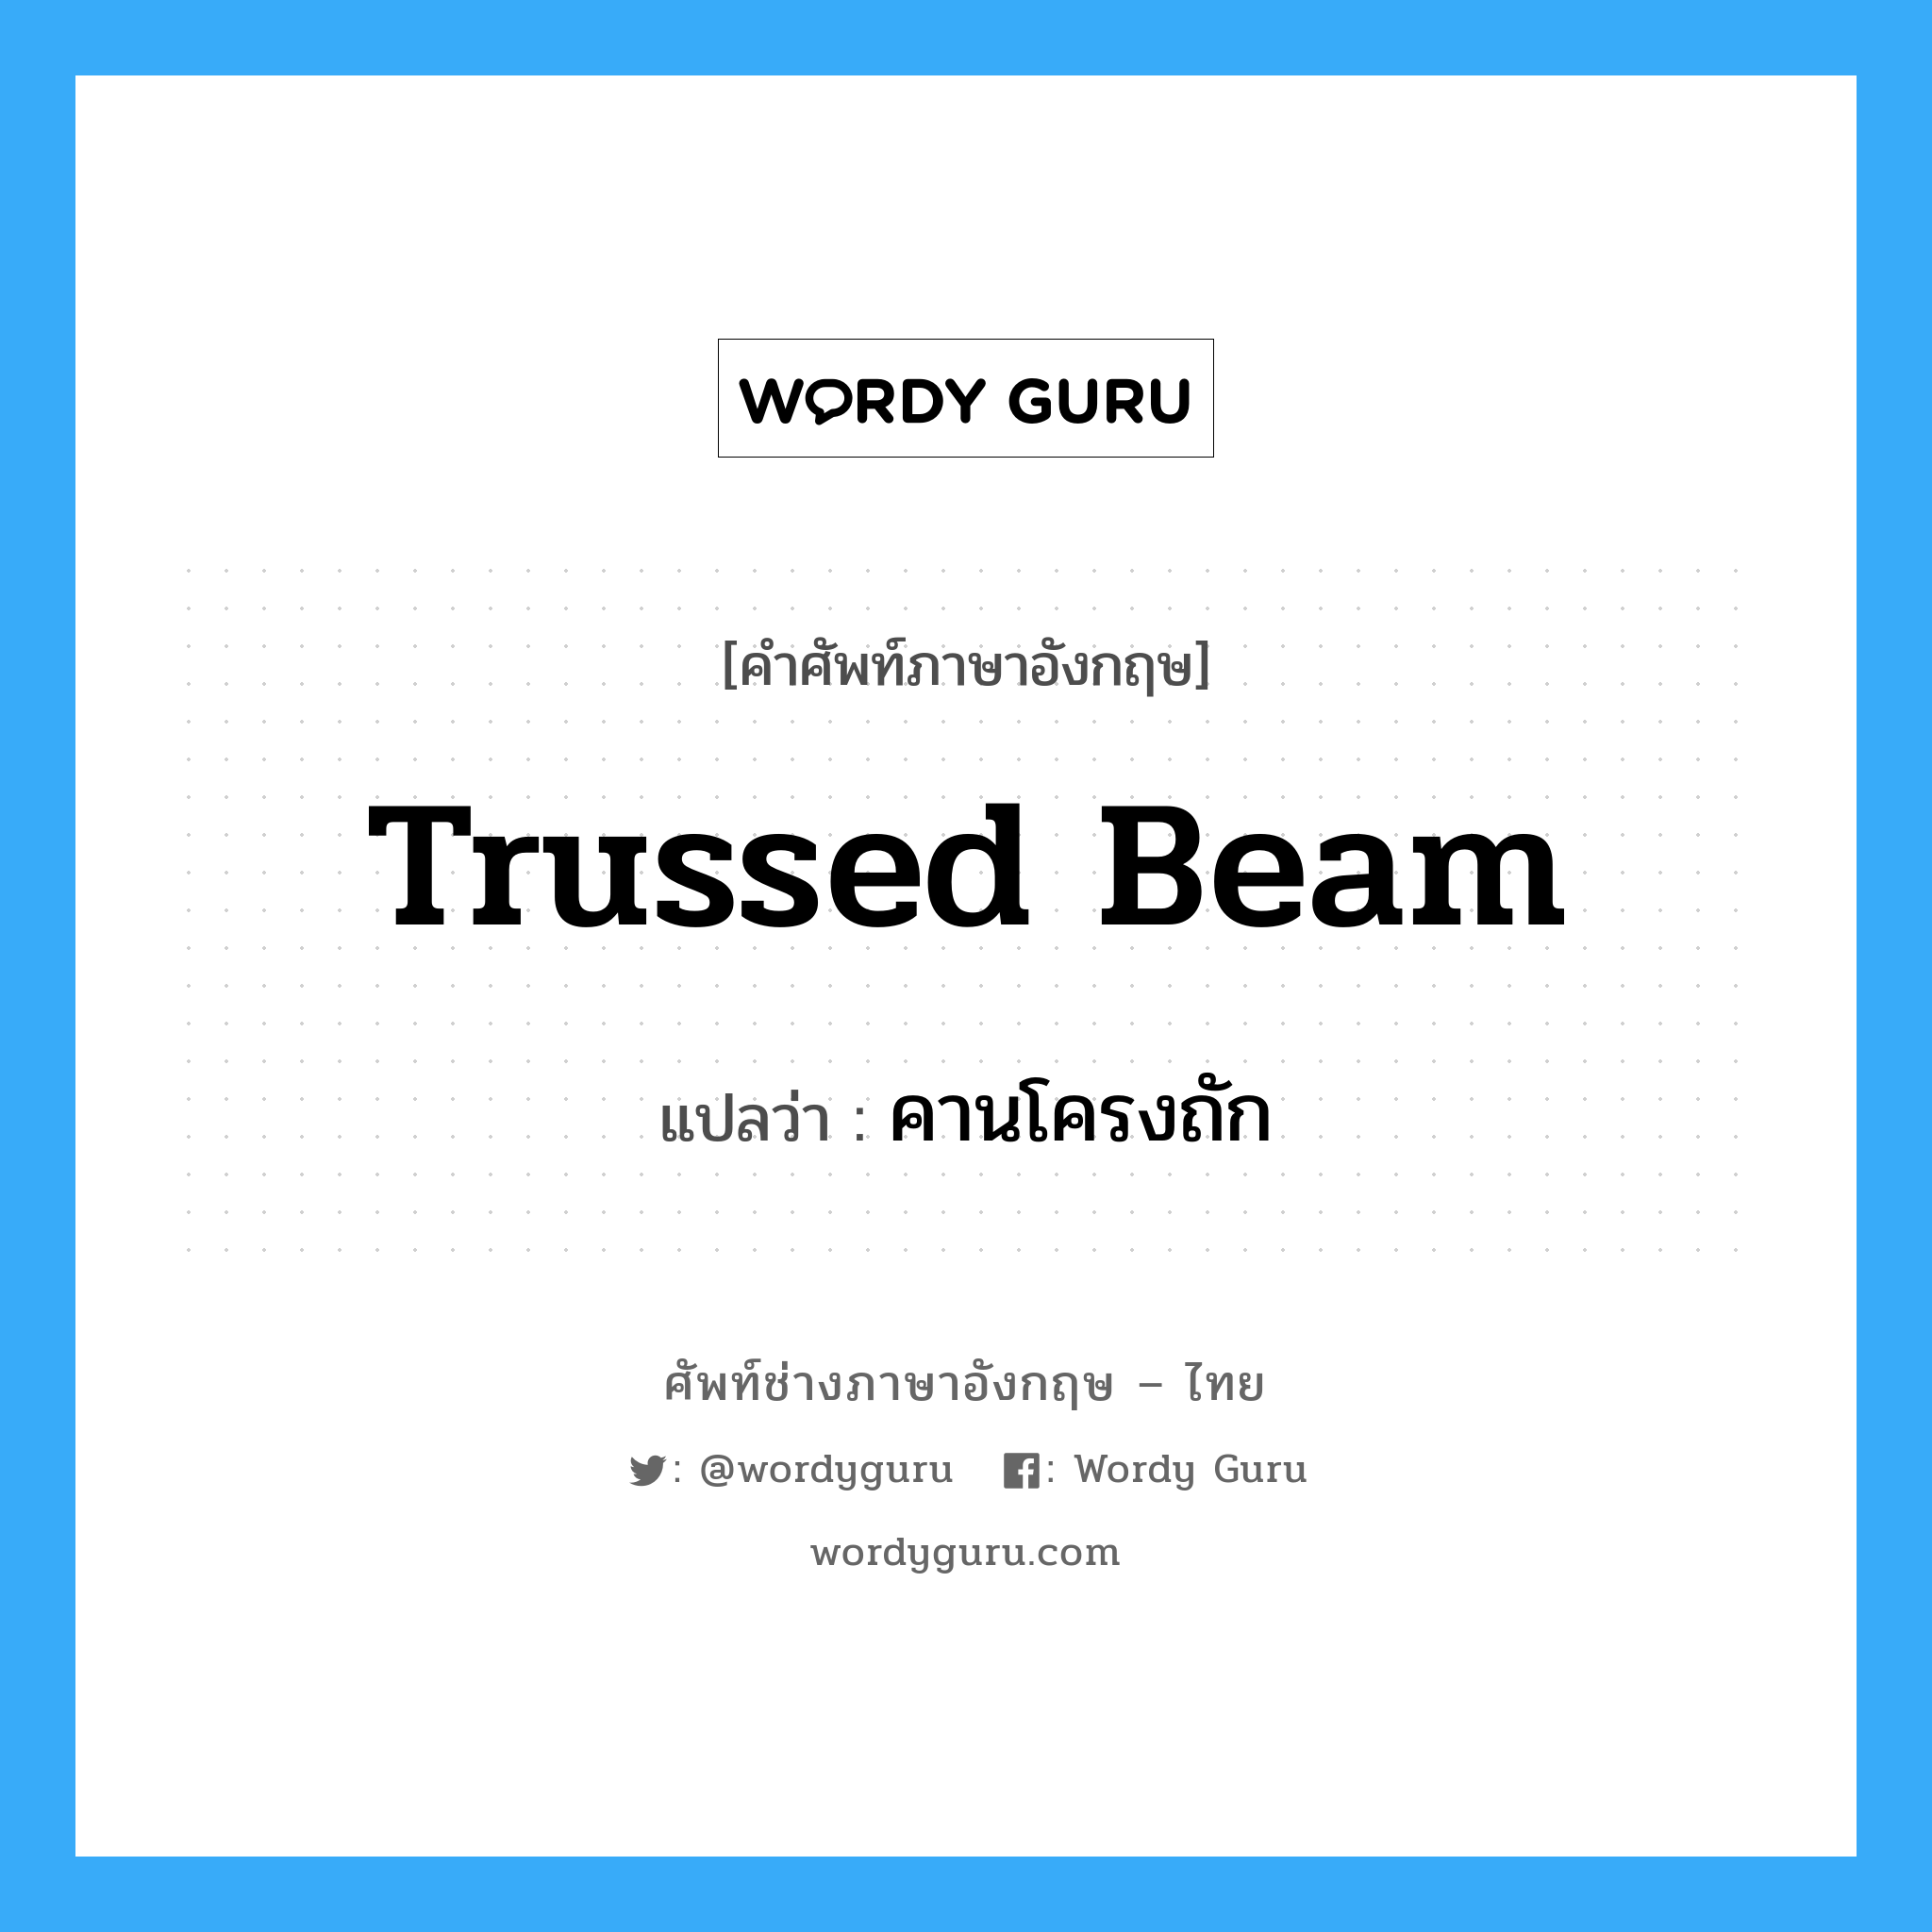 trussed beam แปลว่า?, คำศัพท์ช่างภาษาอังกฤษ - ไทย trussed beam คำศัพท์ภาษาอังกฤษ trussed beam แปลว่า คานโครงถัก